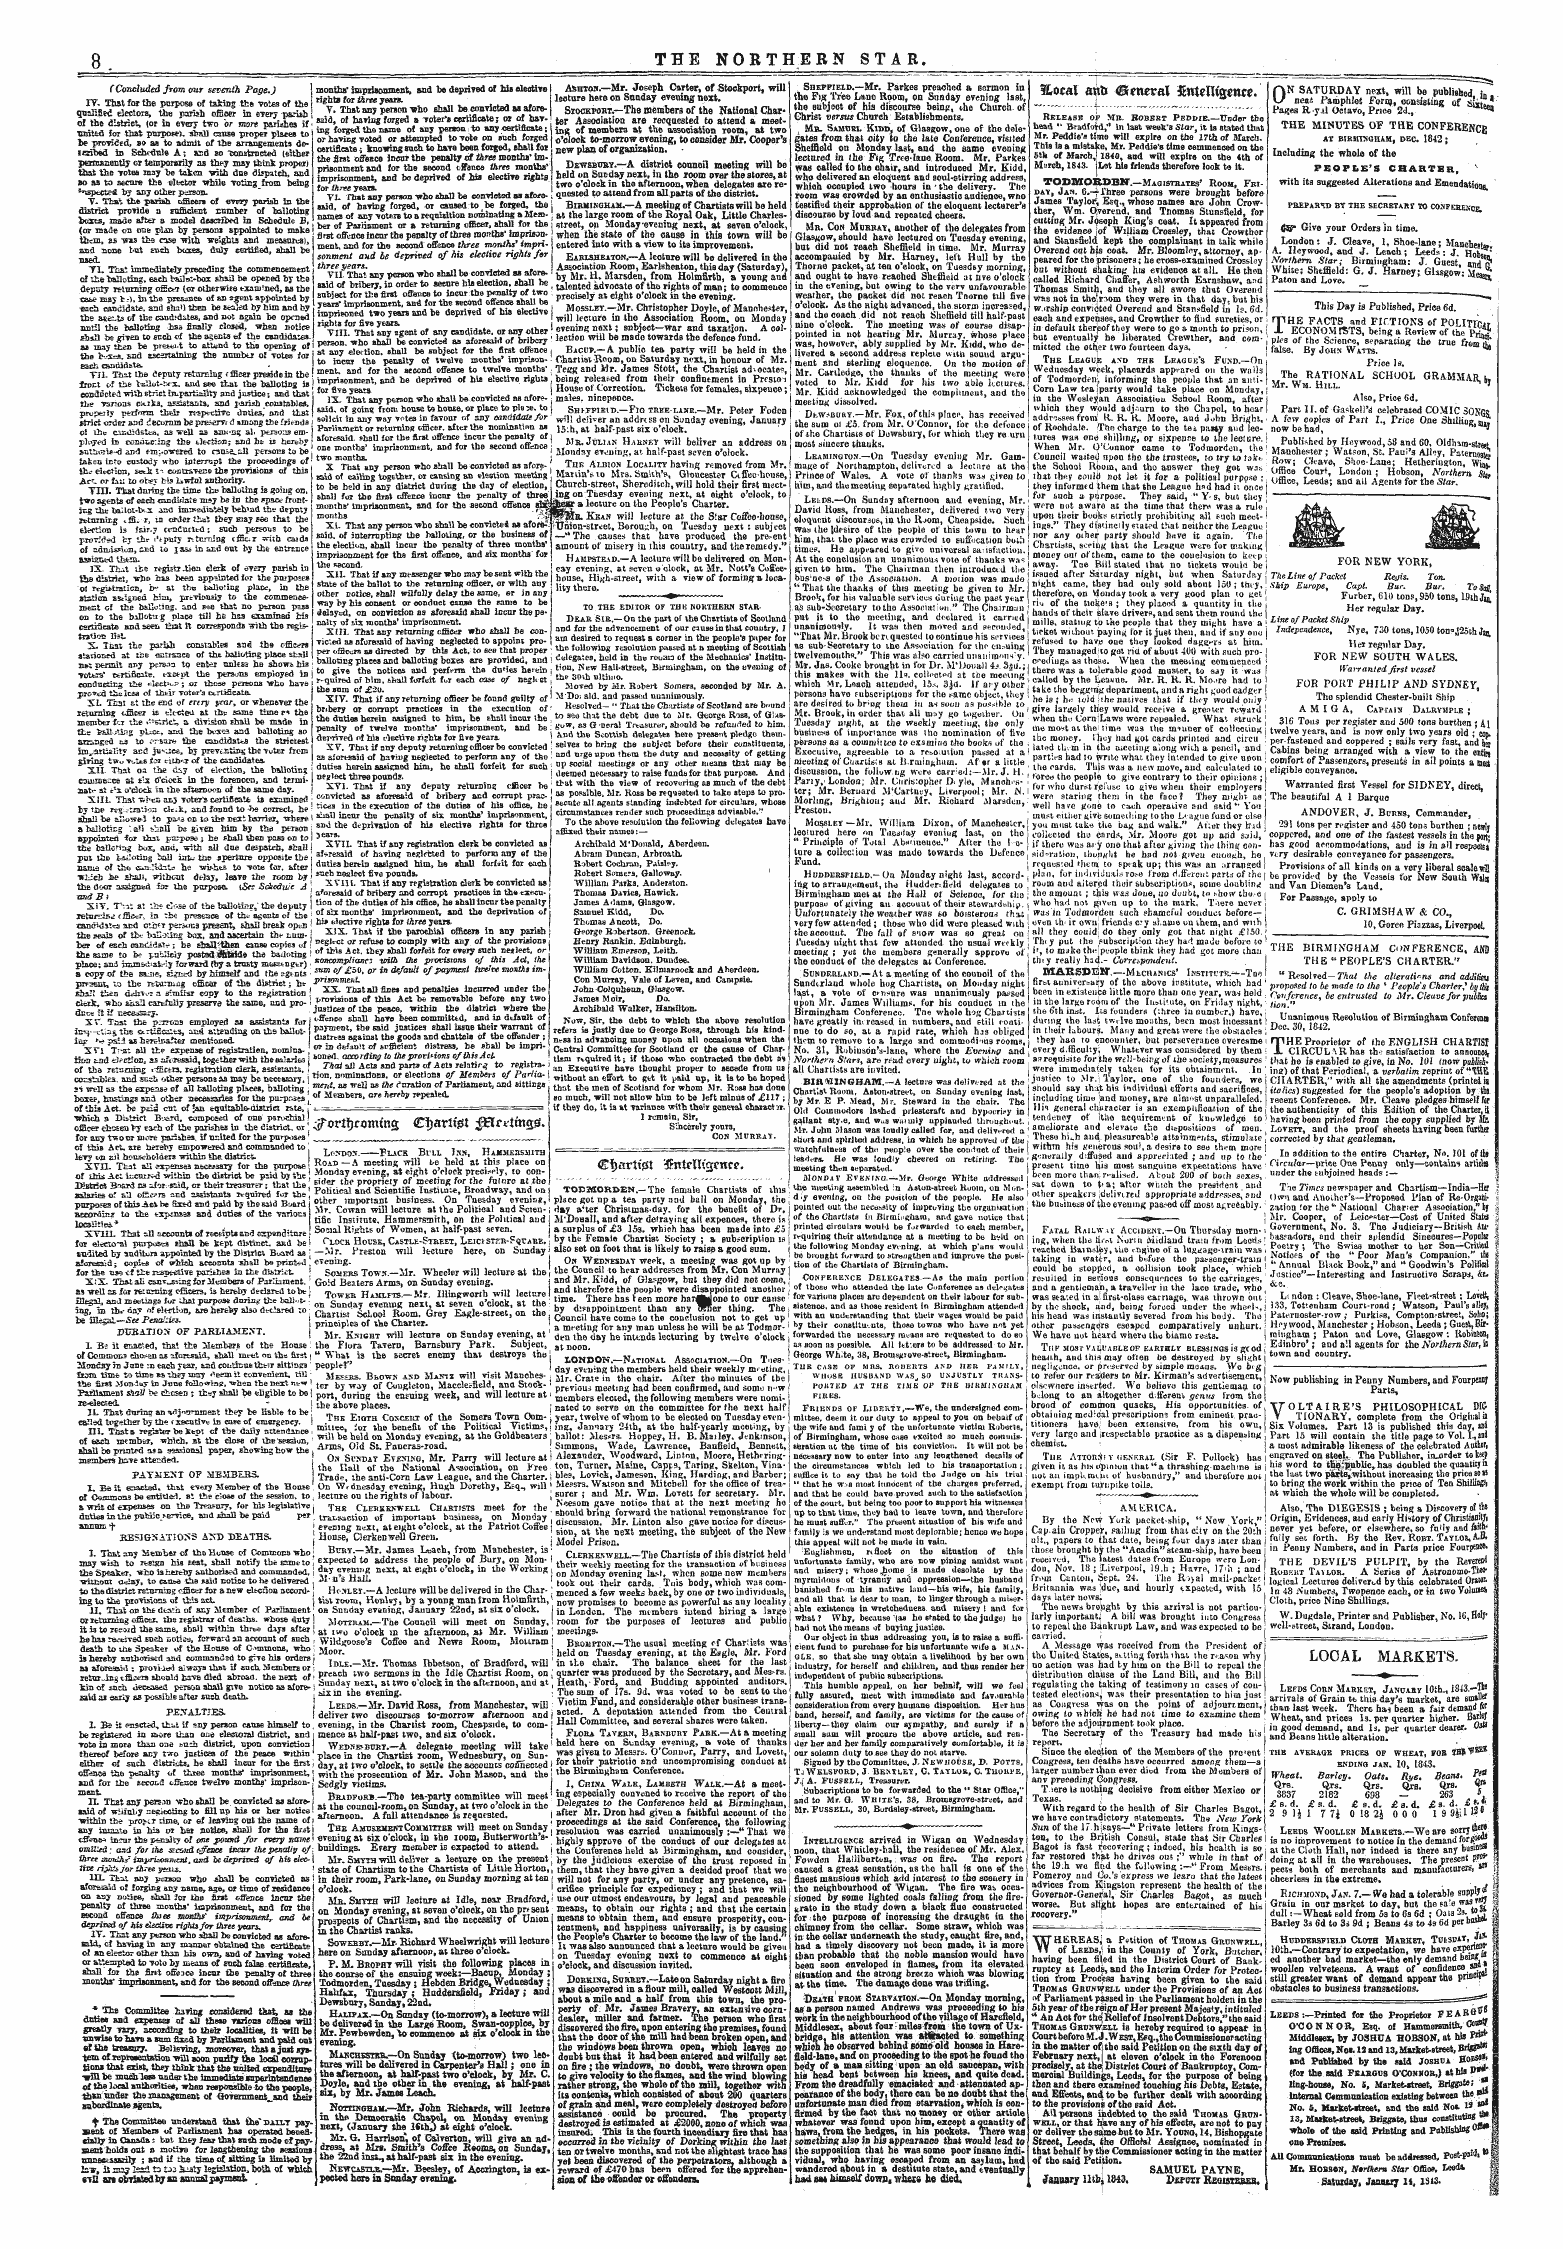 Northern Star (1837-1852): jS F Y, 4th edition - &Lt;£$Artt.Dt $Ntenurcncr.